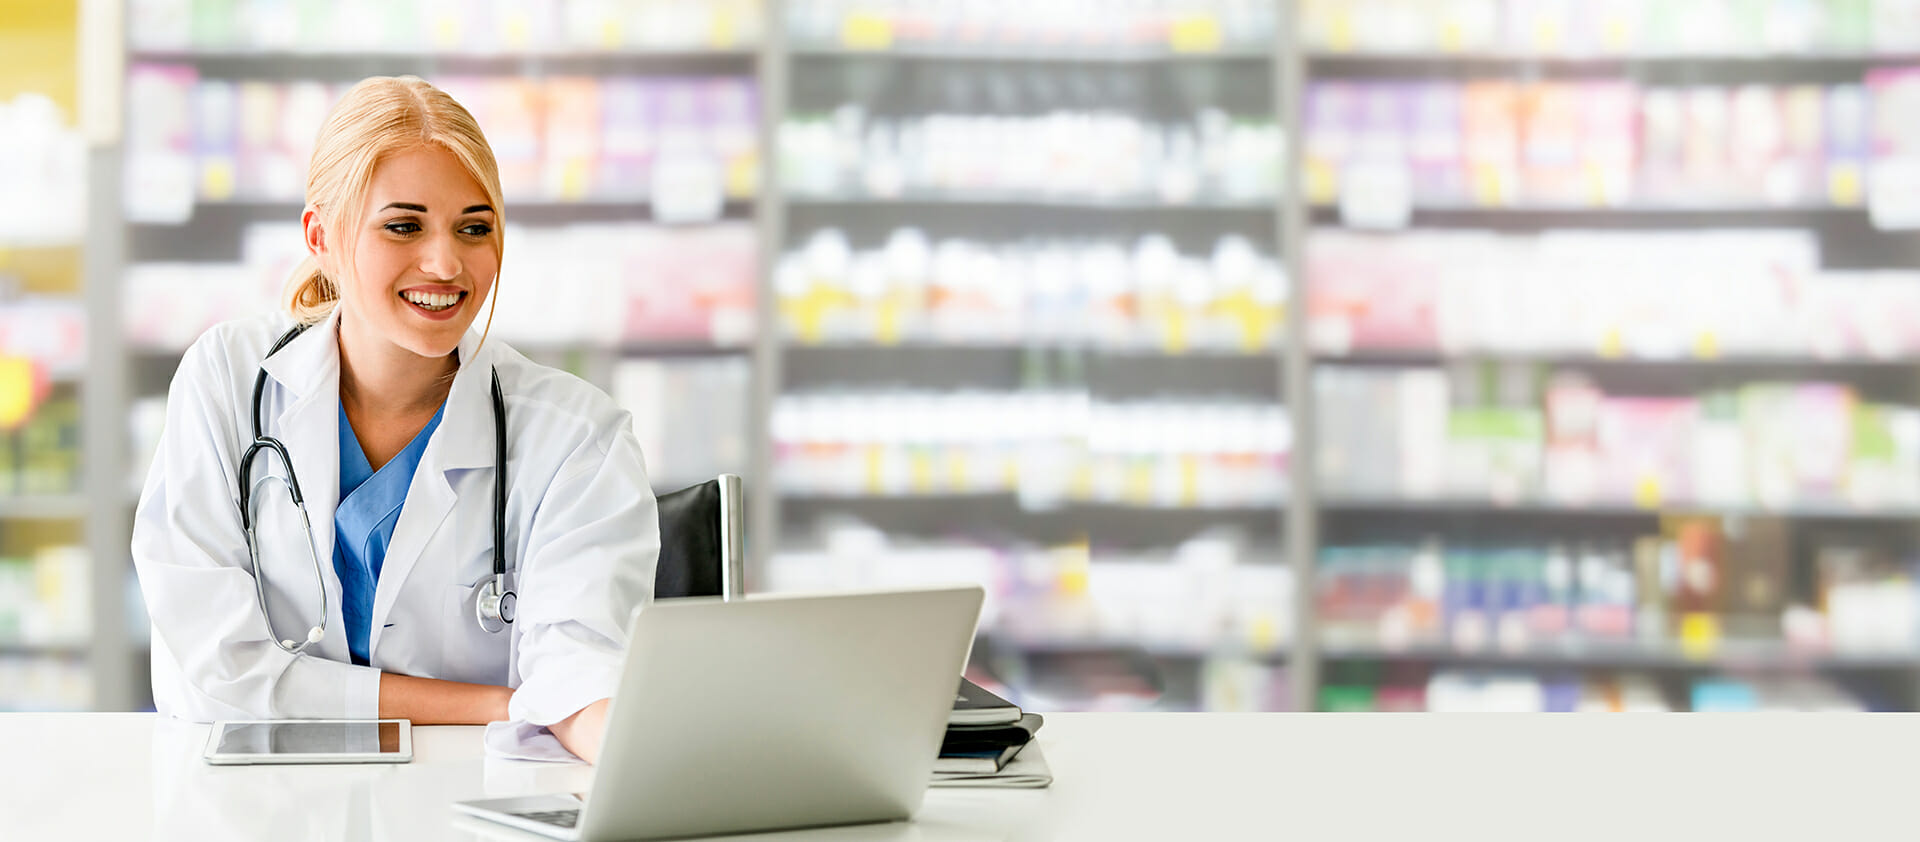 Quy định về phần mềm quản lý nhà thuốc theo quyết định của Bộ Y tế